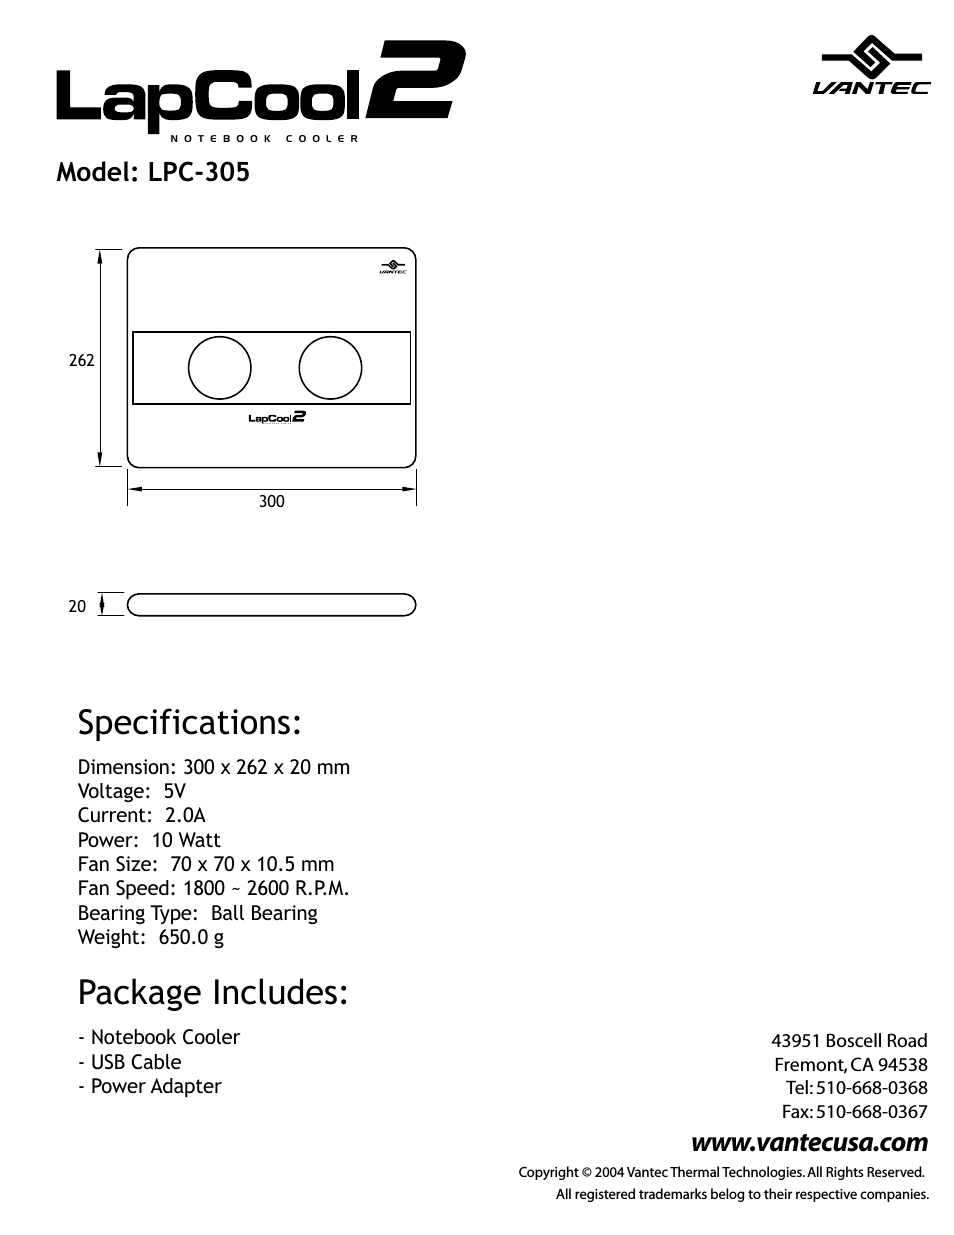 LapCool 2 Notebook Cooler LPC-305